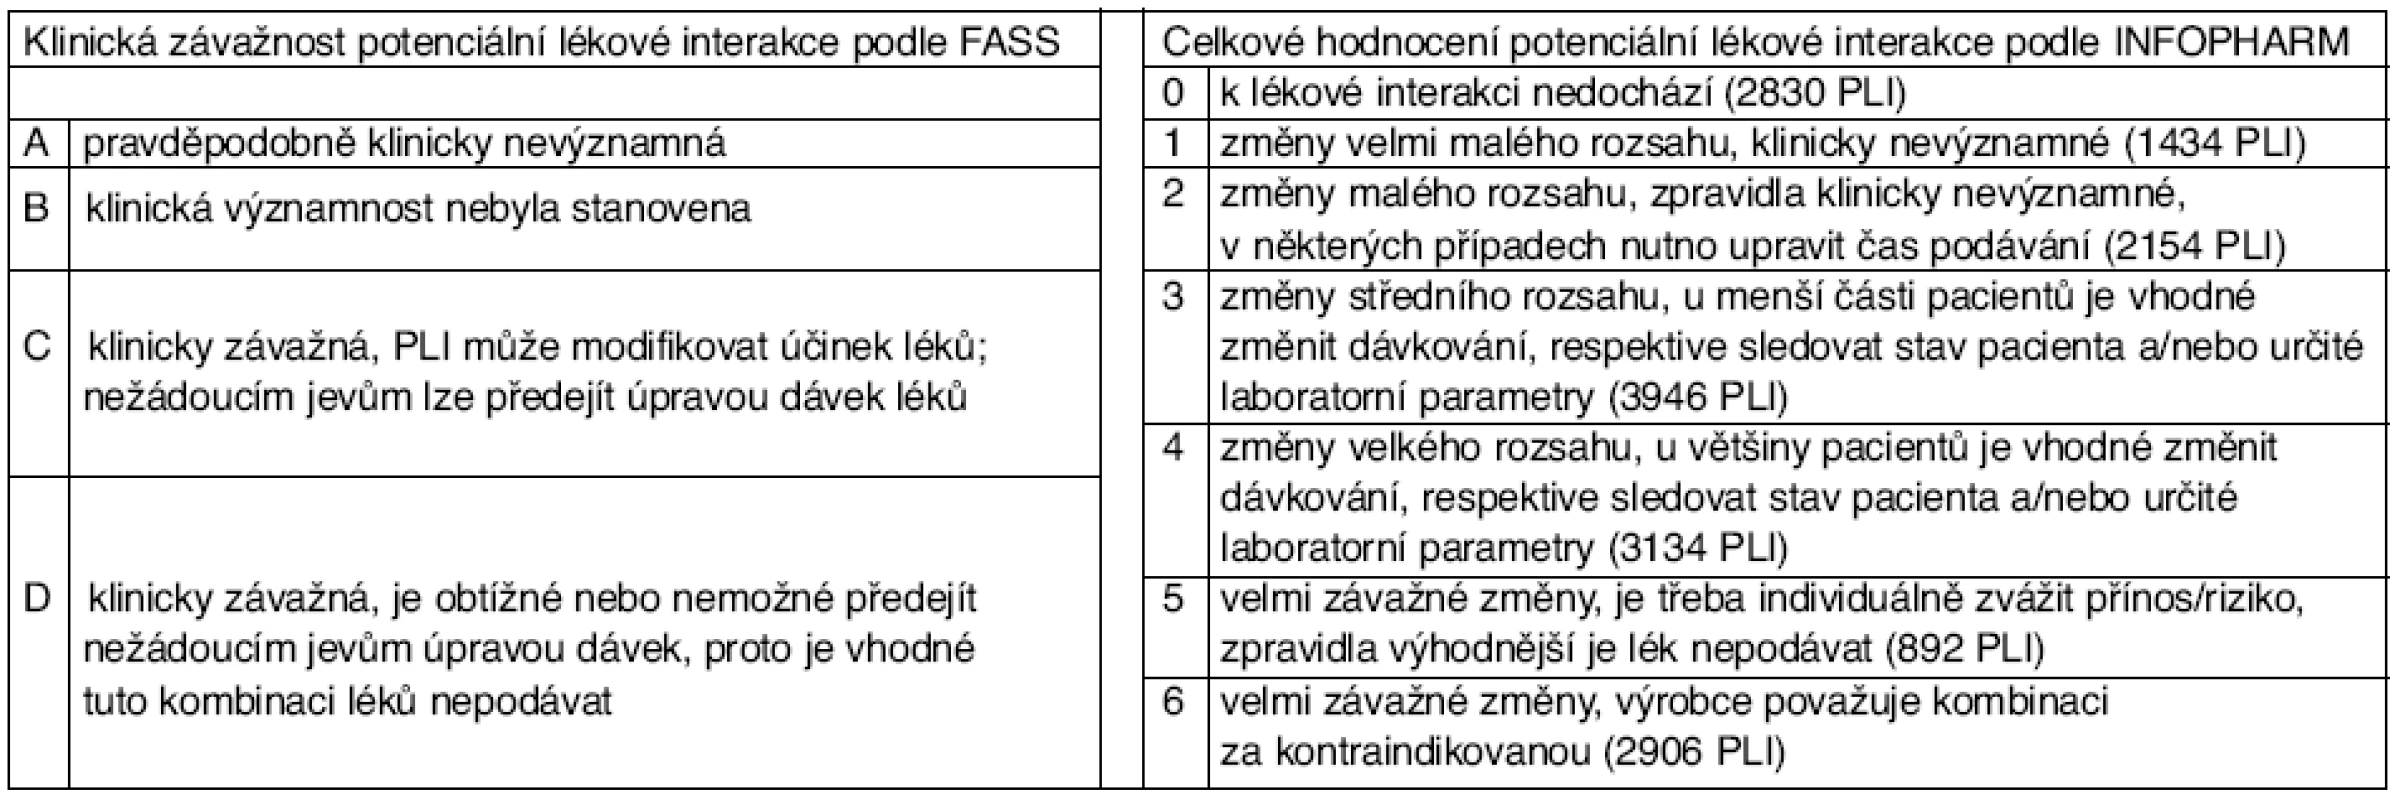 Klasifikace závažnosti potenciálních lékových interakcí podle FASS a INFOPHARM*